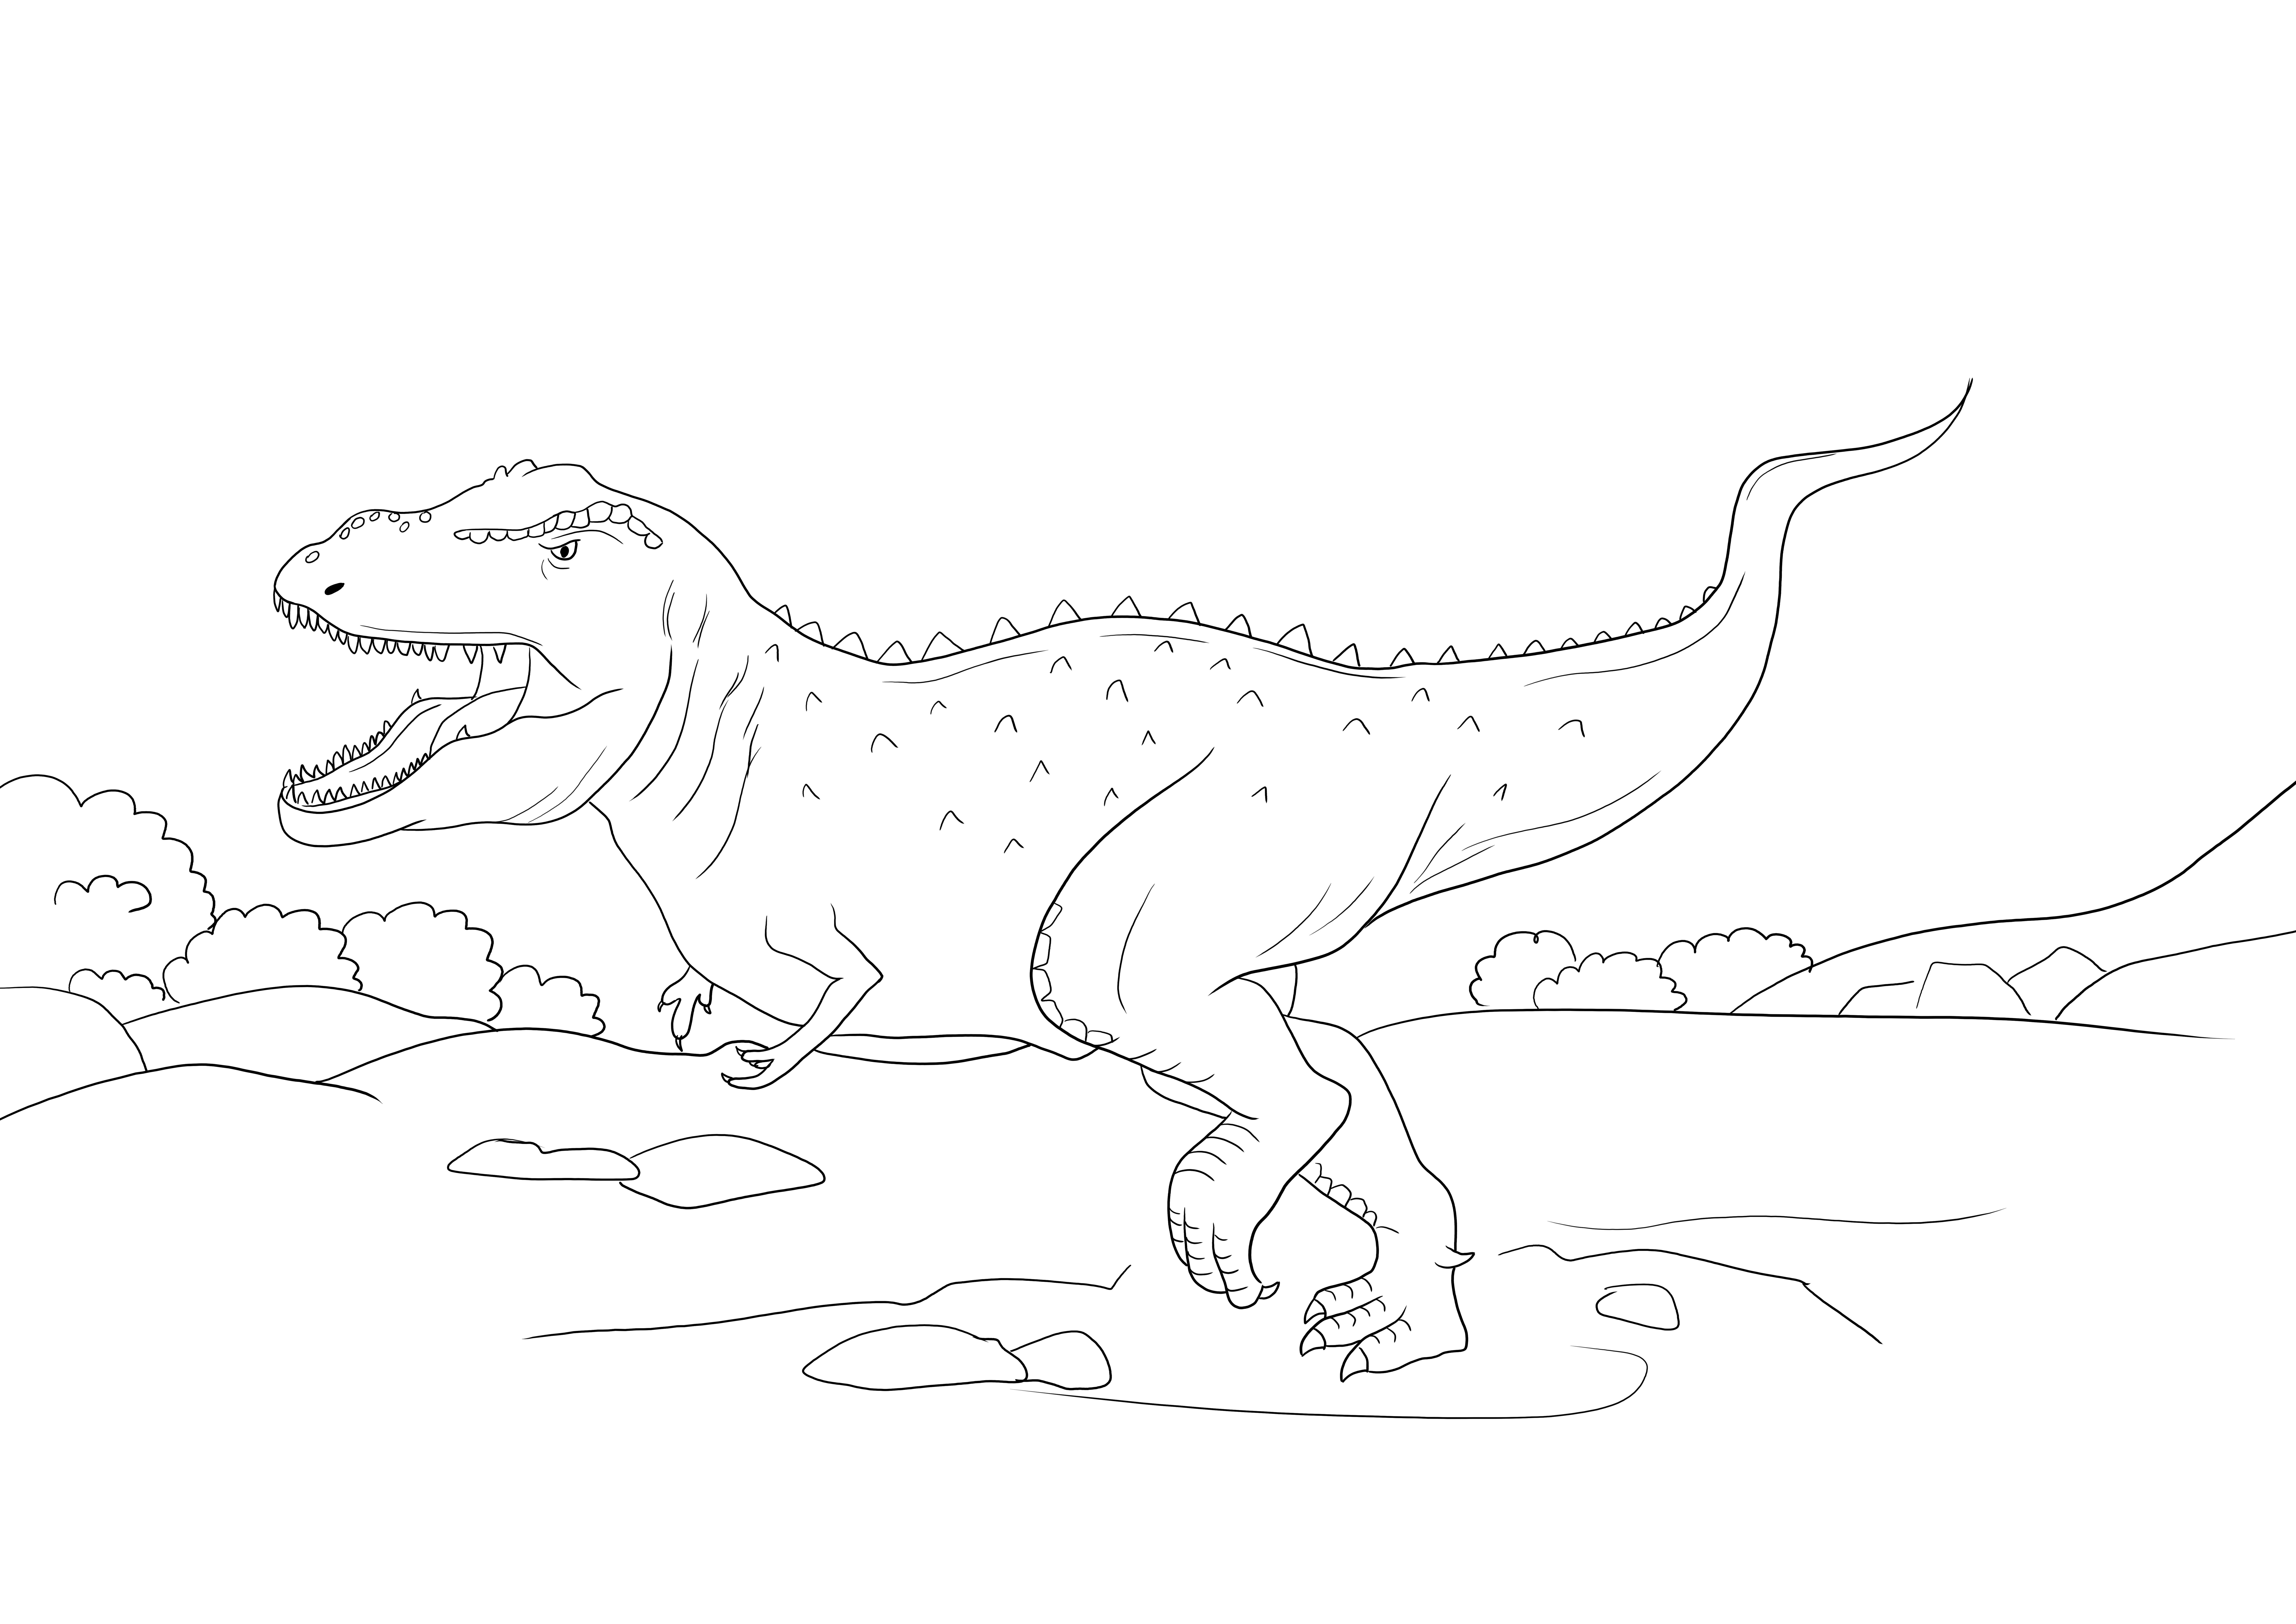 Jurassic park T-rex kükreyen çocuklar için kolay boyama için ücretsiz yazdırılabilir